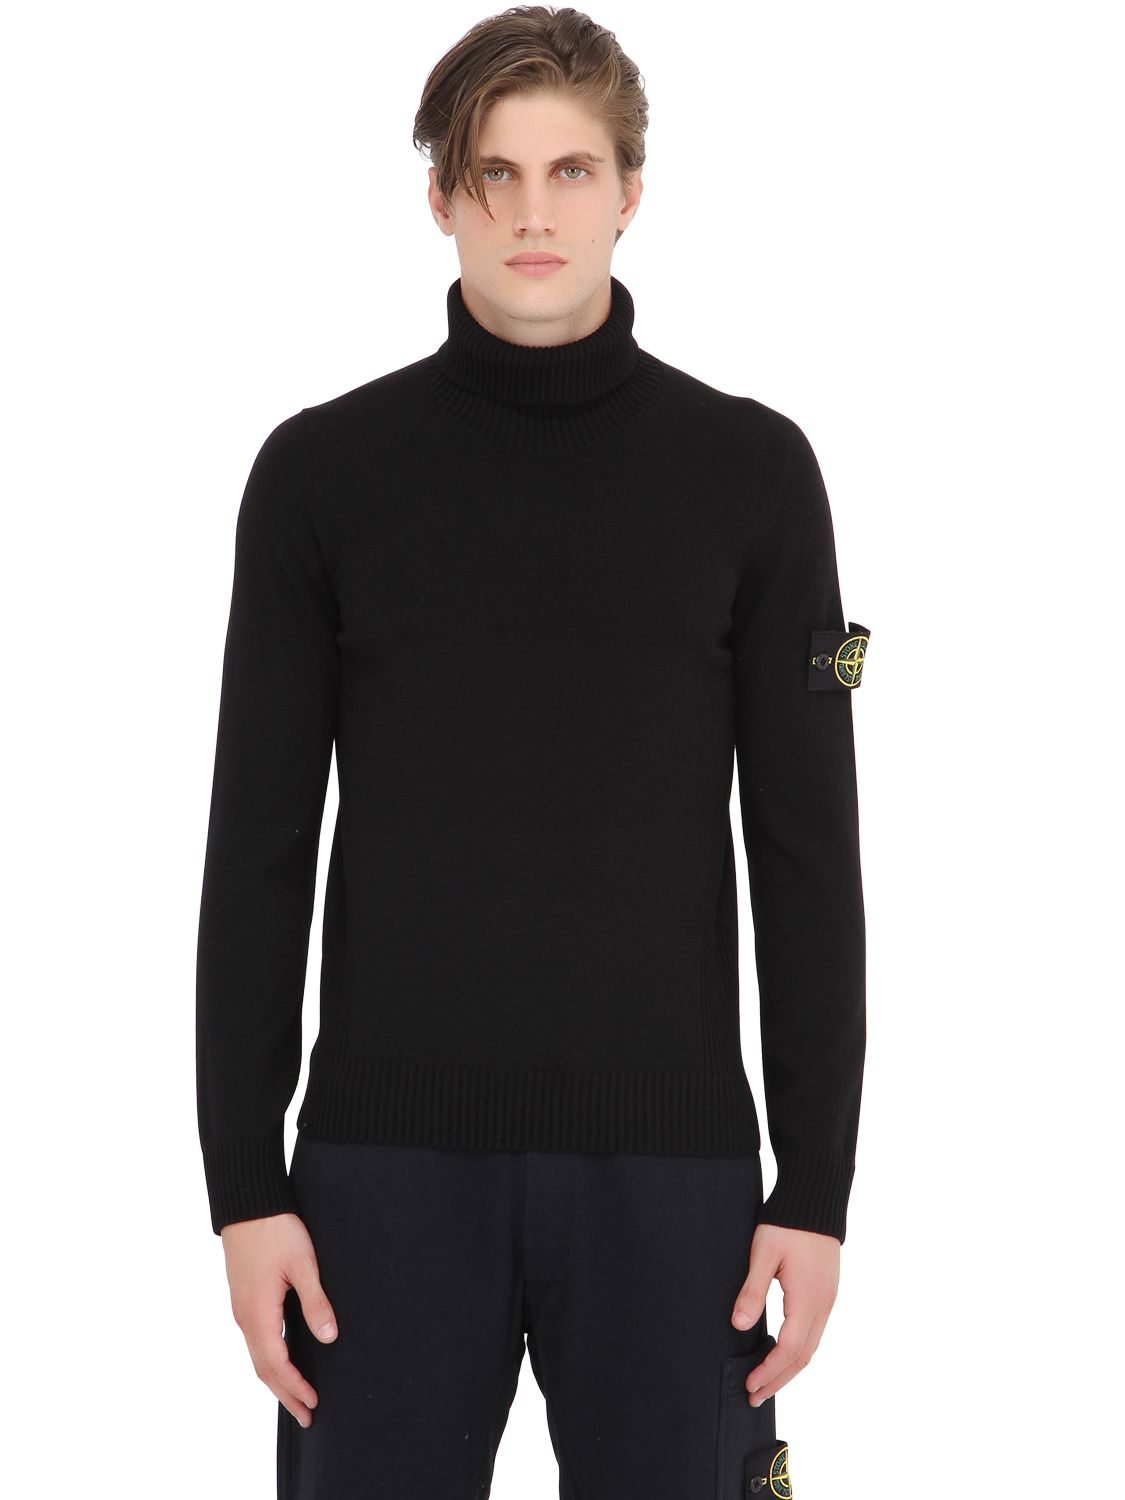 Stone Island Wool Blend Turtleneck Sweater in Black for Men - Lyst